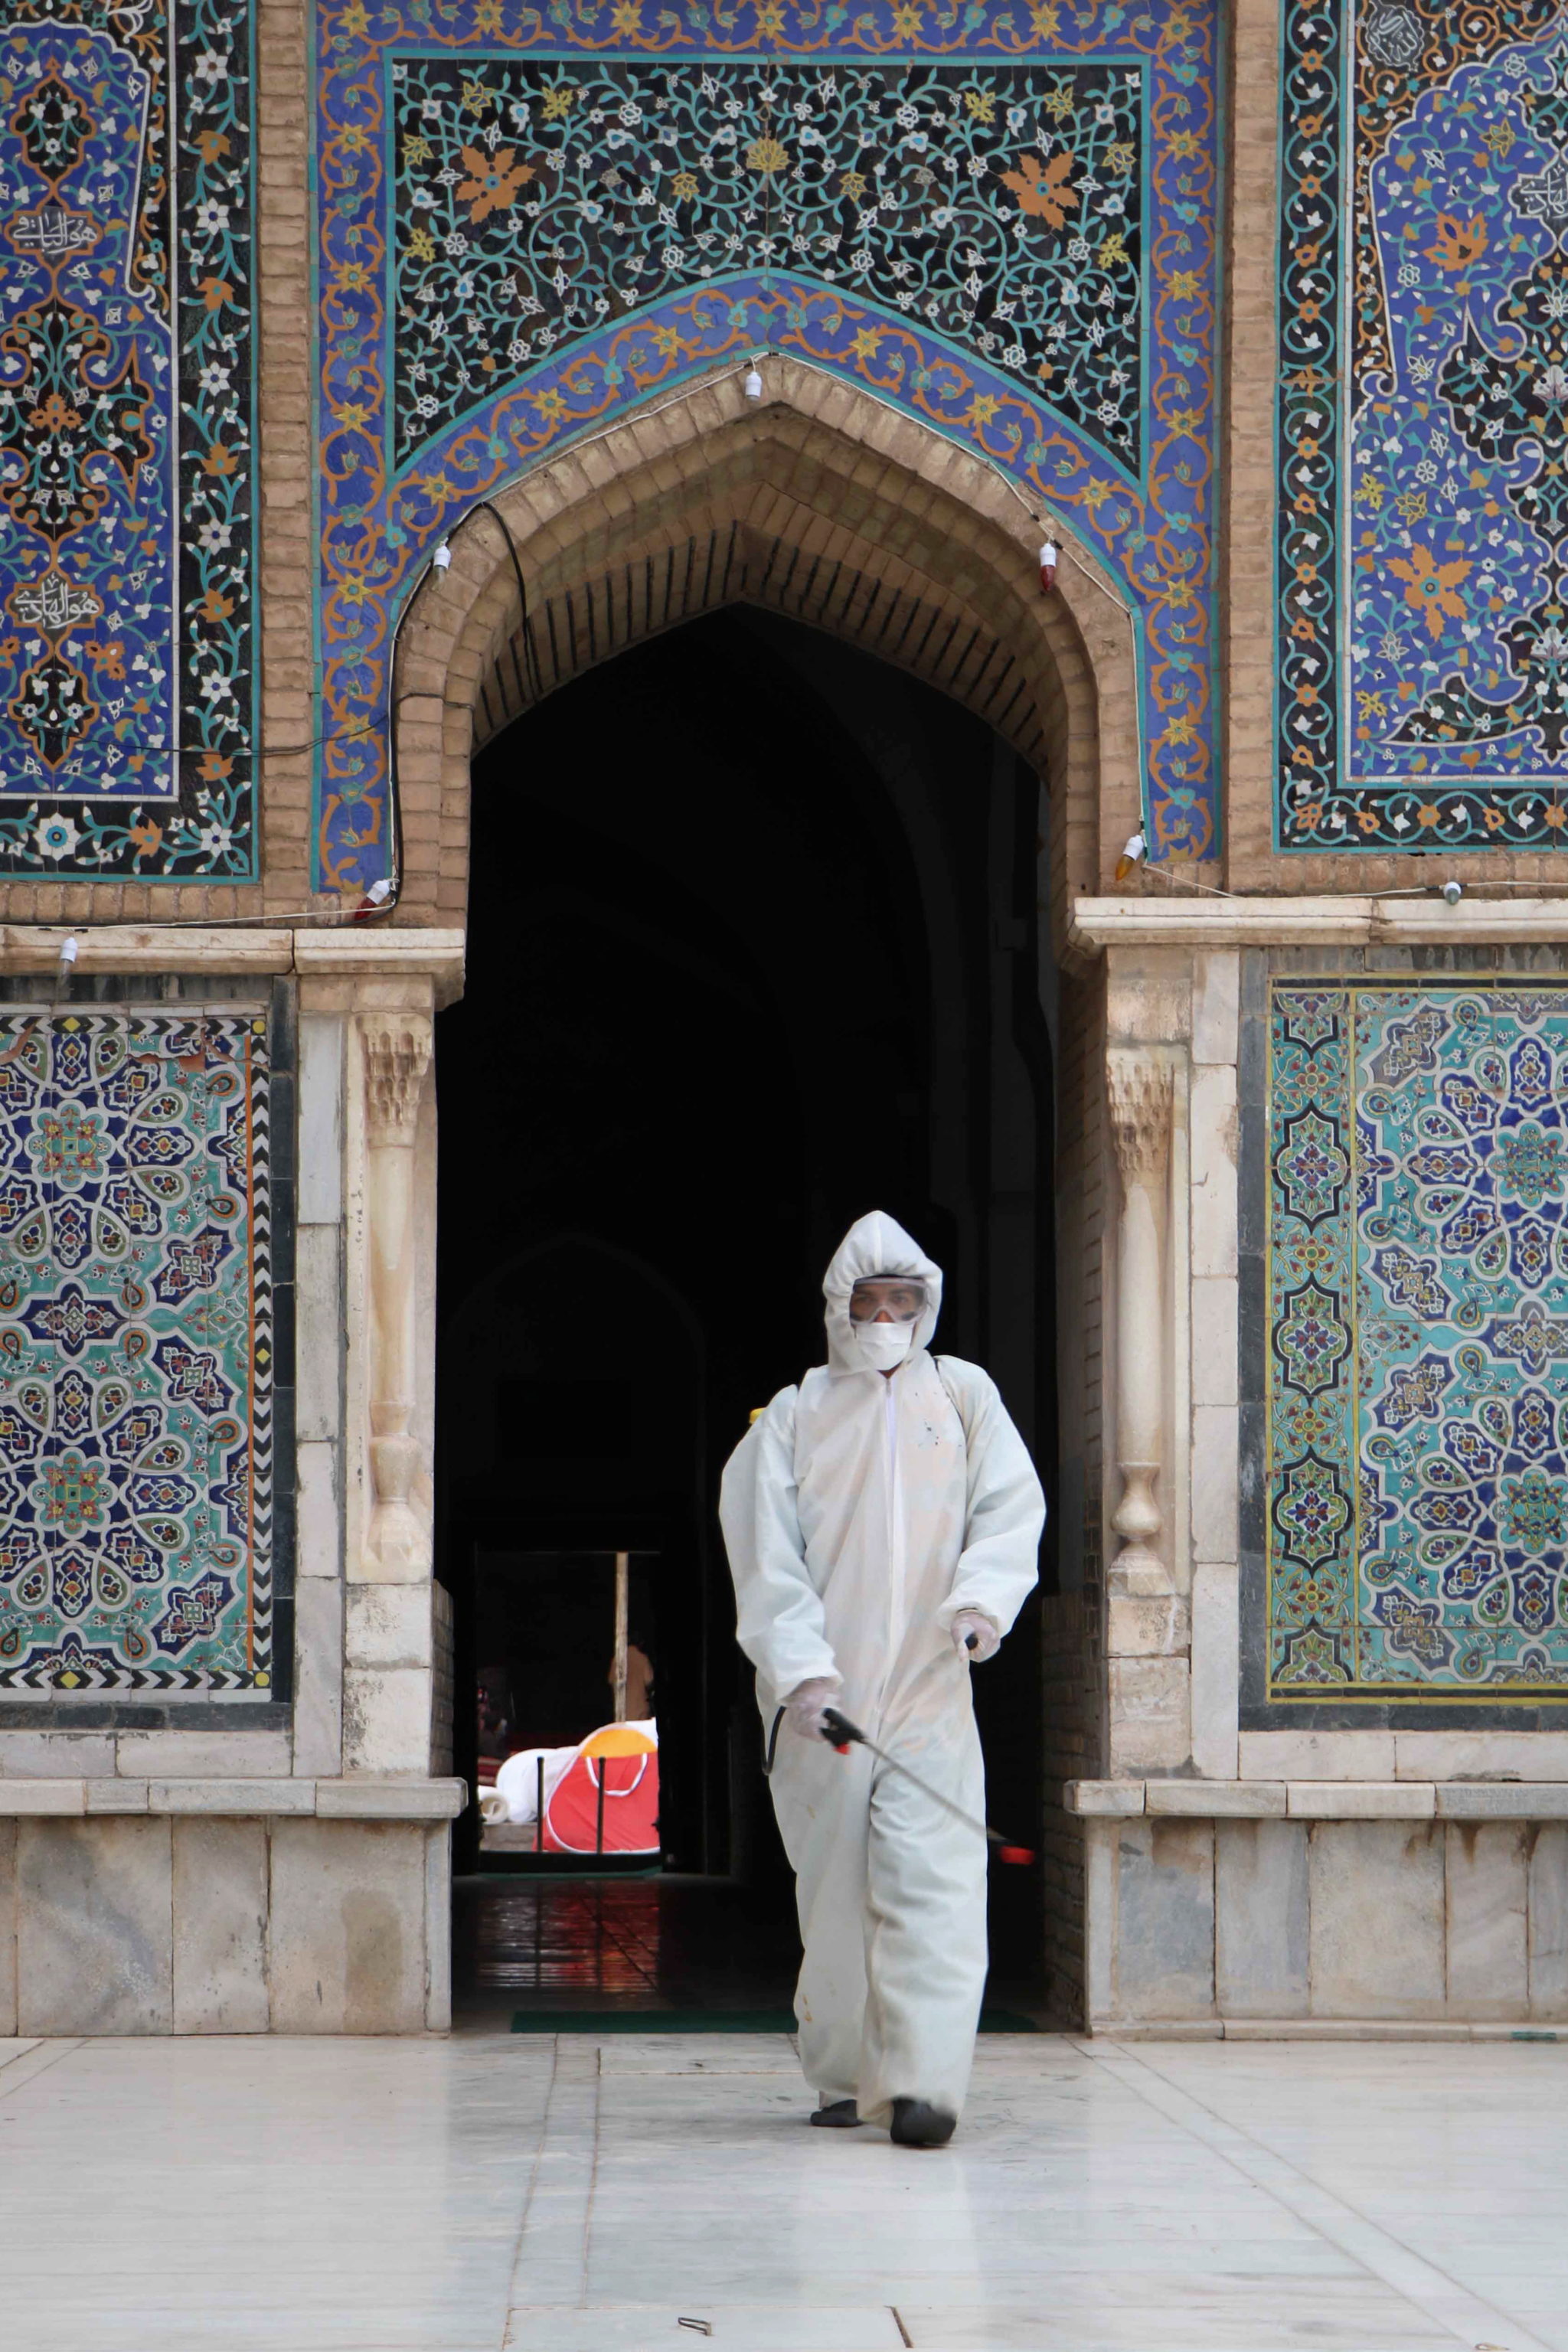 Meczet w Afganistanie odkażany za względu na zagrożenie rozprzestrzeniania się koronawirusa. fot. EPA/JALIL REZAYEE